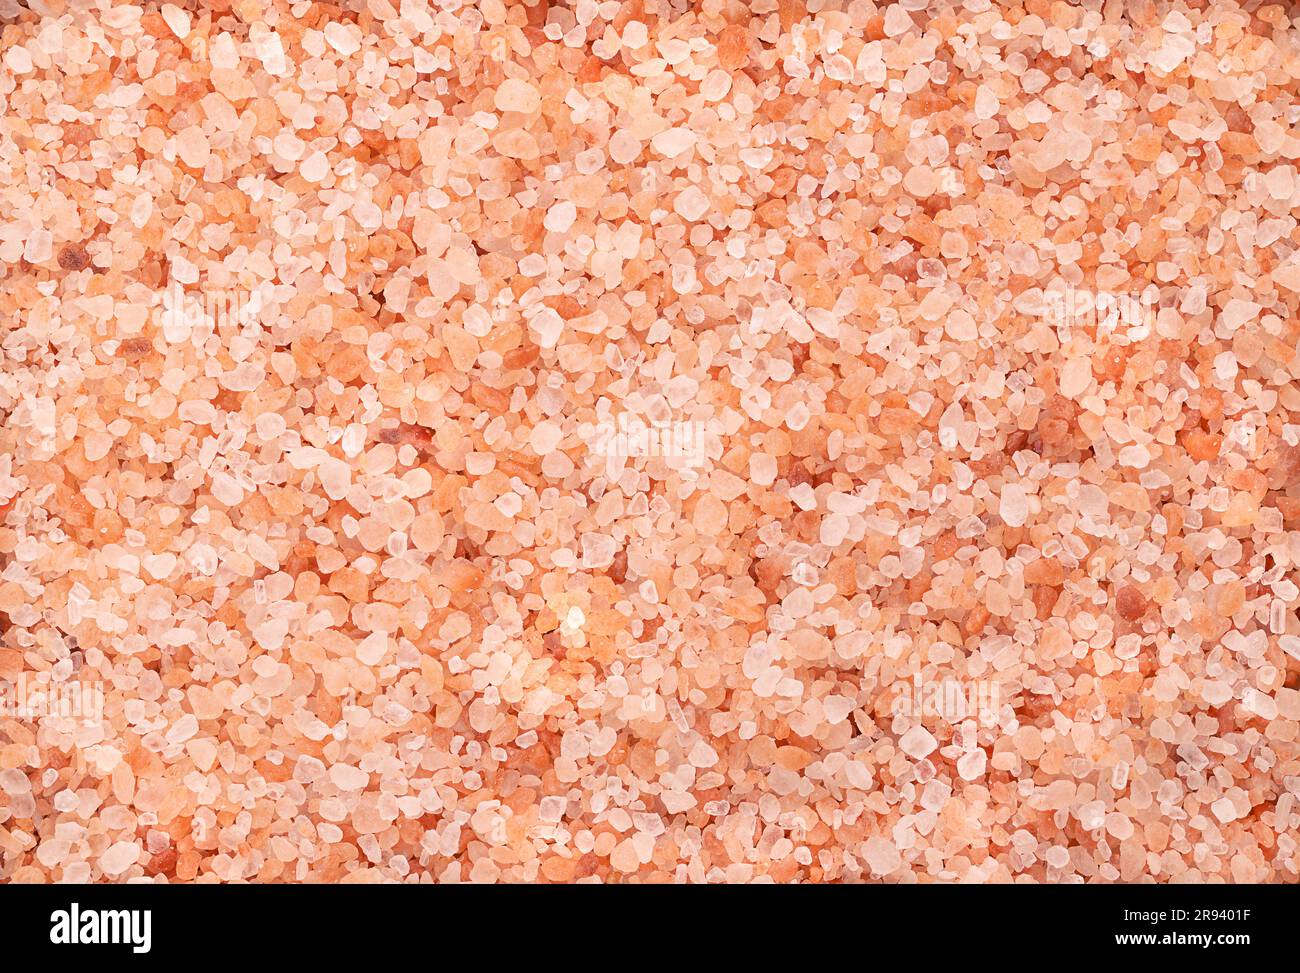 Sel de l'Himalaya, cristaux grossiers, d'en haut. Sel de roche, halite, avec une teinte rose, due à des traces de minéraux, extrait de la région du Punjab. Banque D'Images